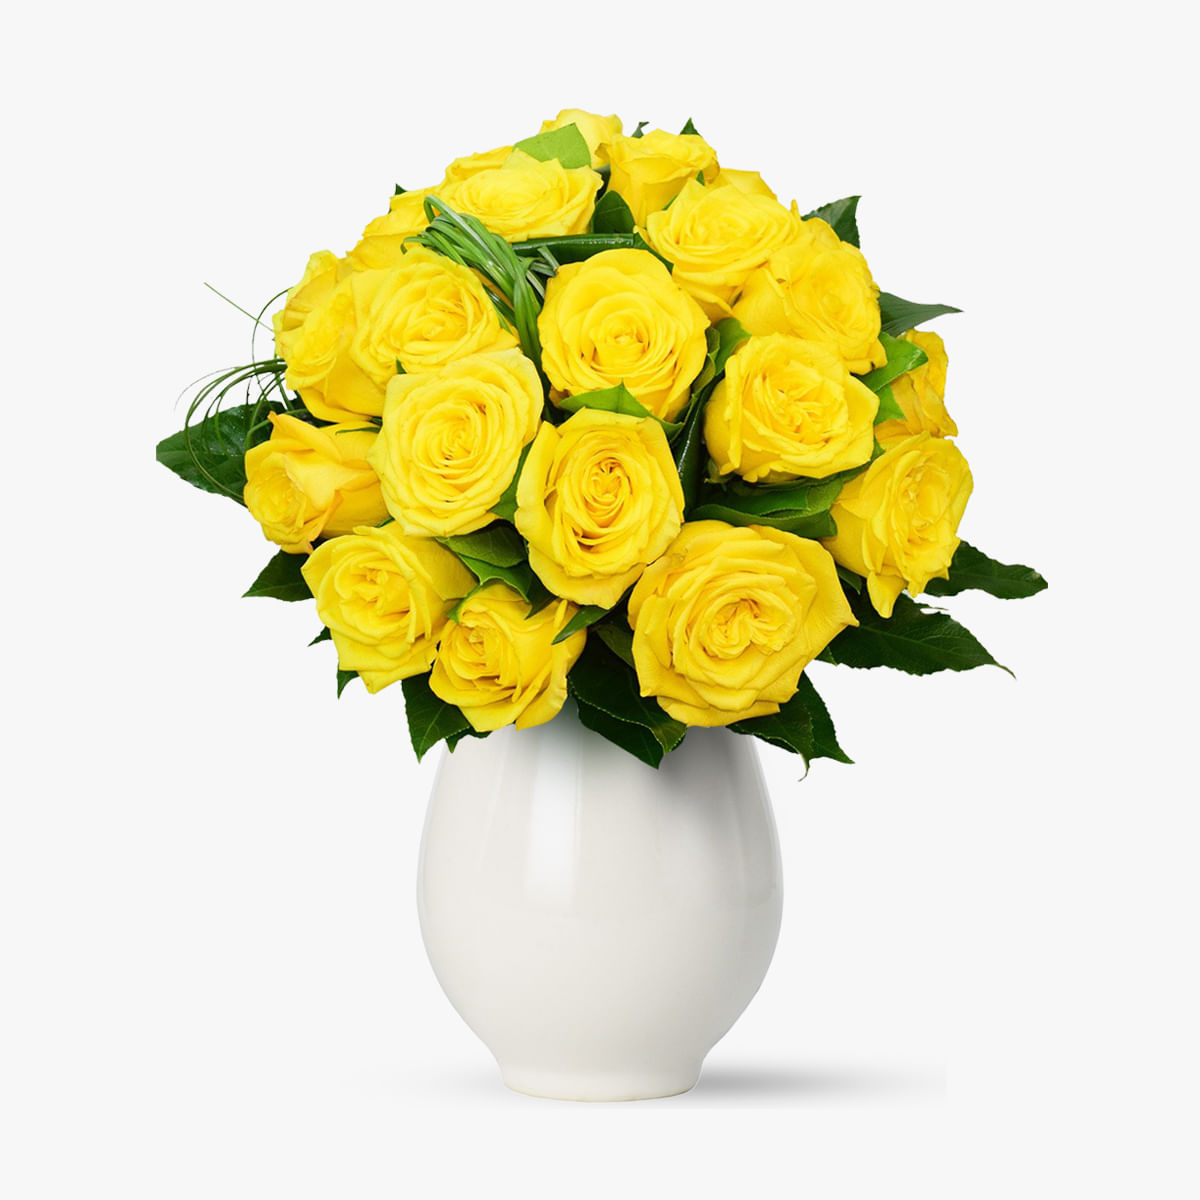 Buchet de 45 trandafiri multicolori – Standard Buchet